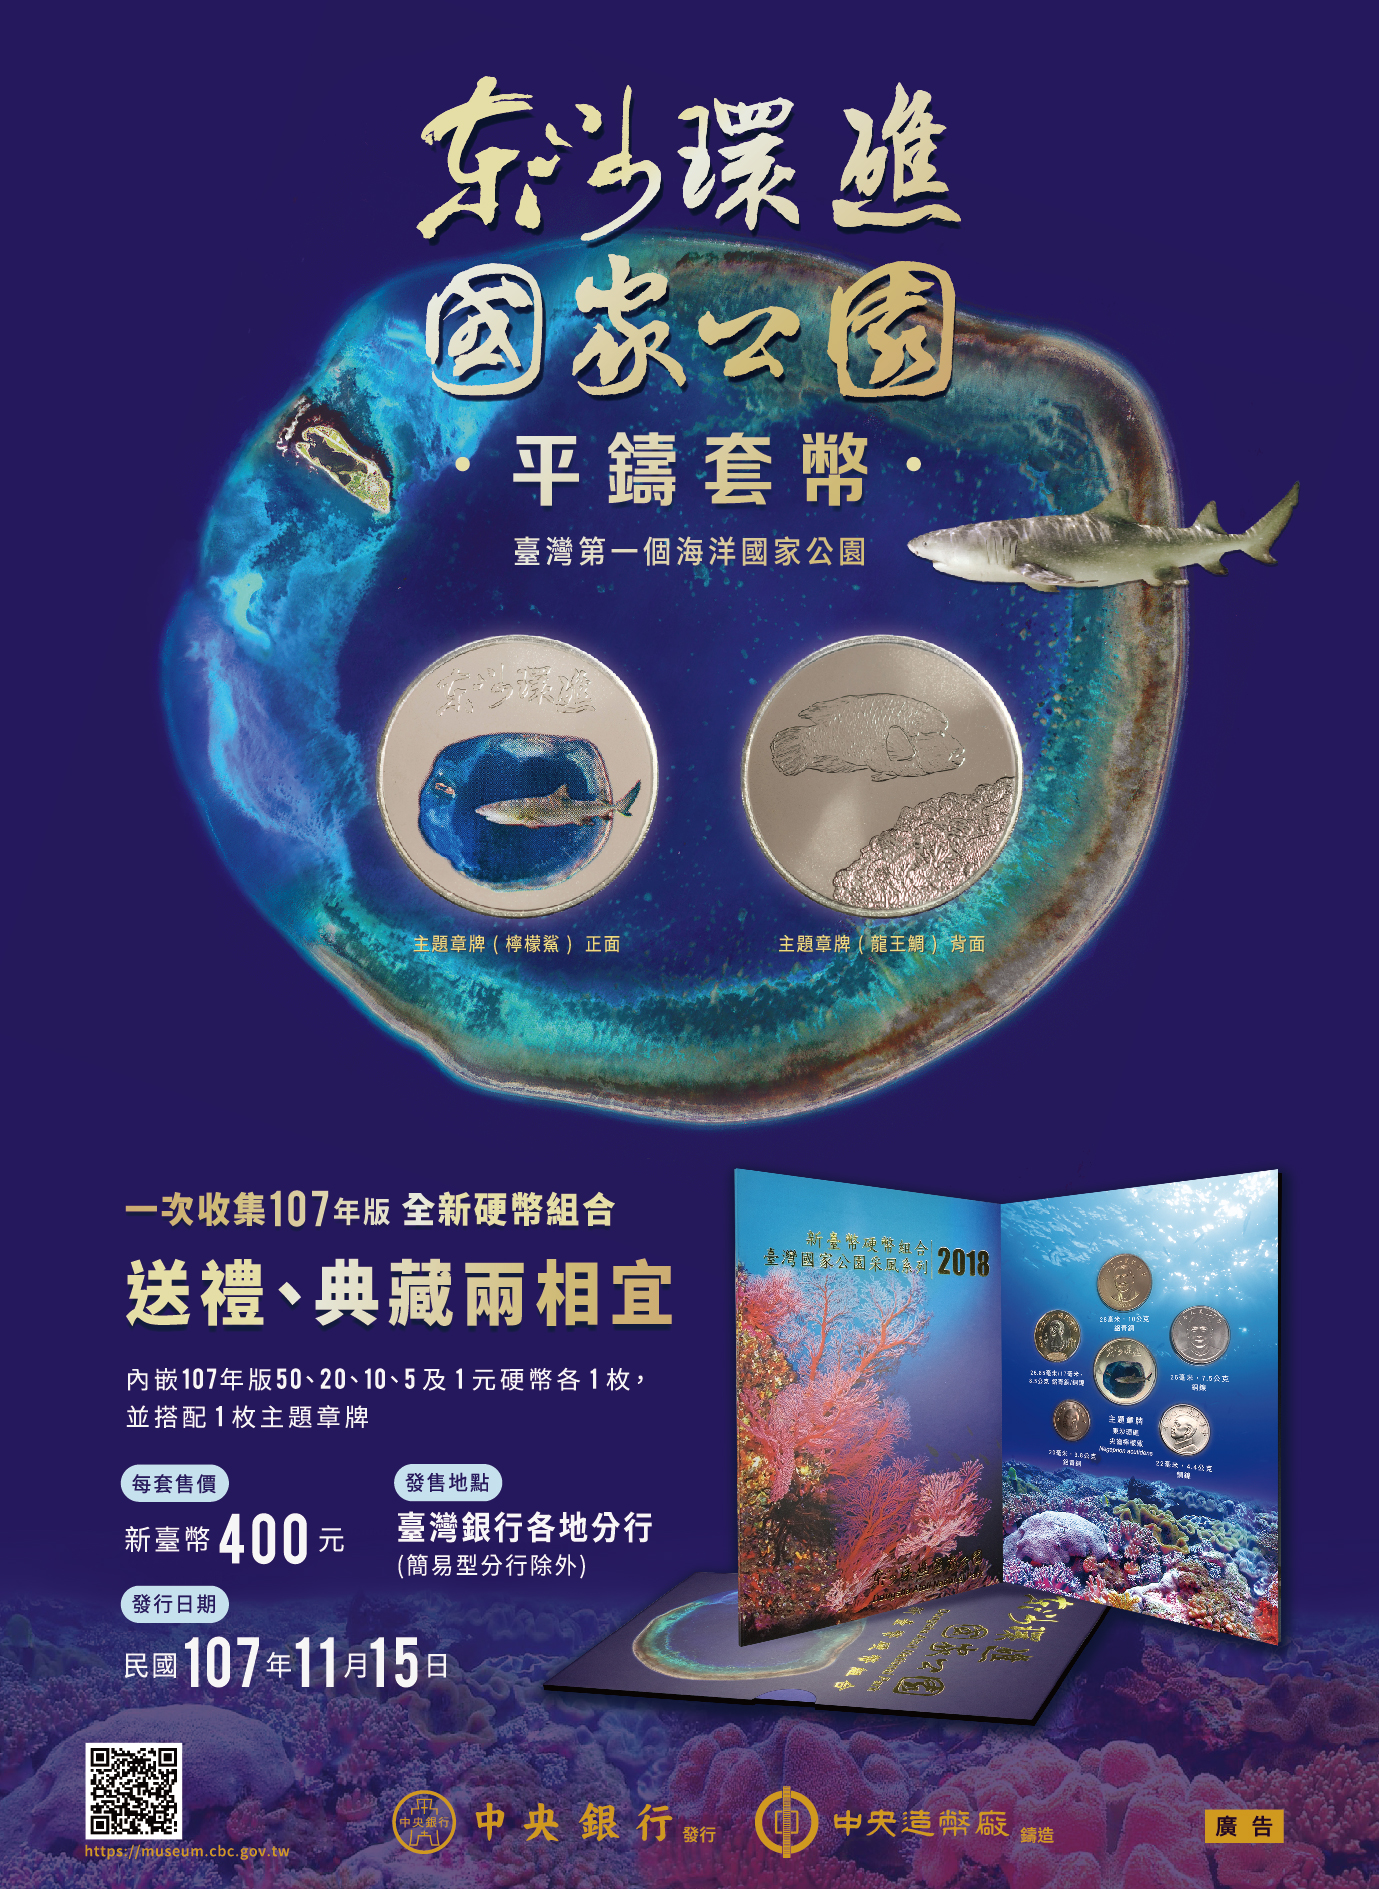 「臺灣國家公園采風系列-東沙環礁國家公園」宣傳海報